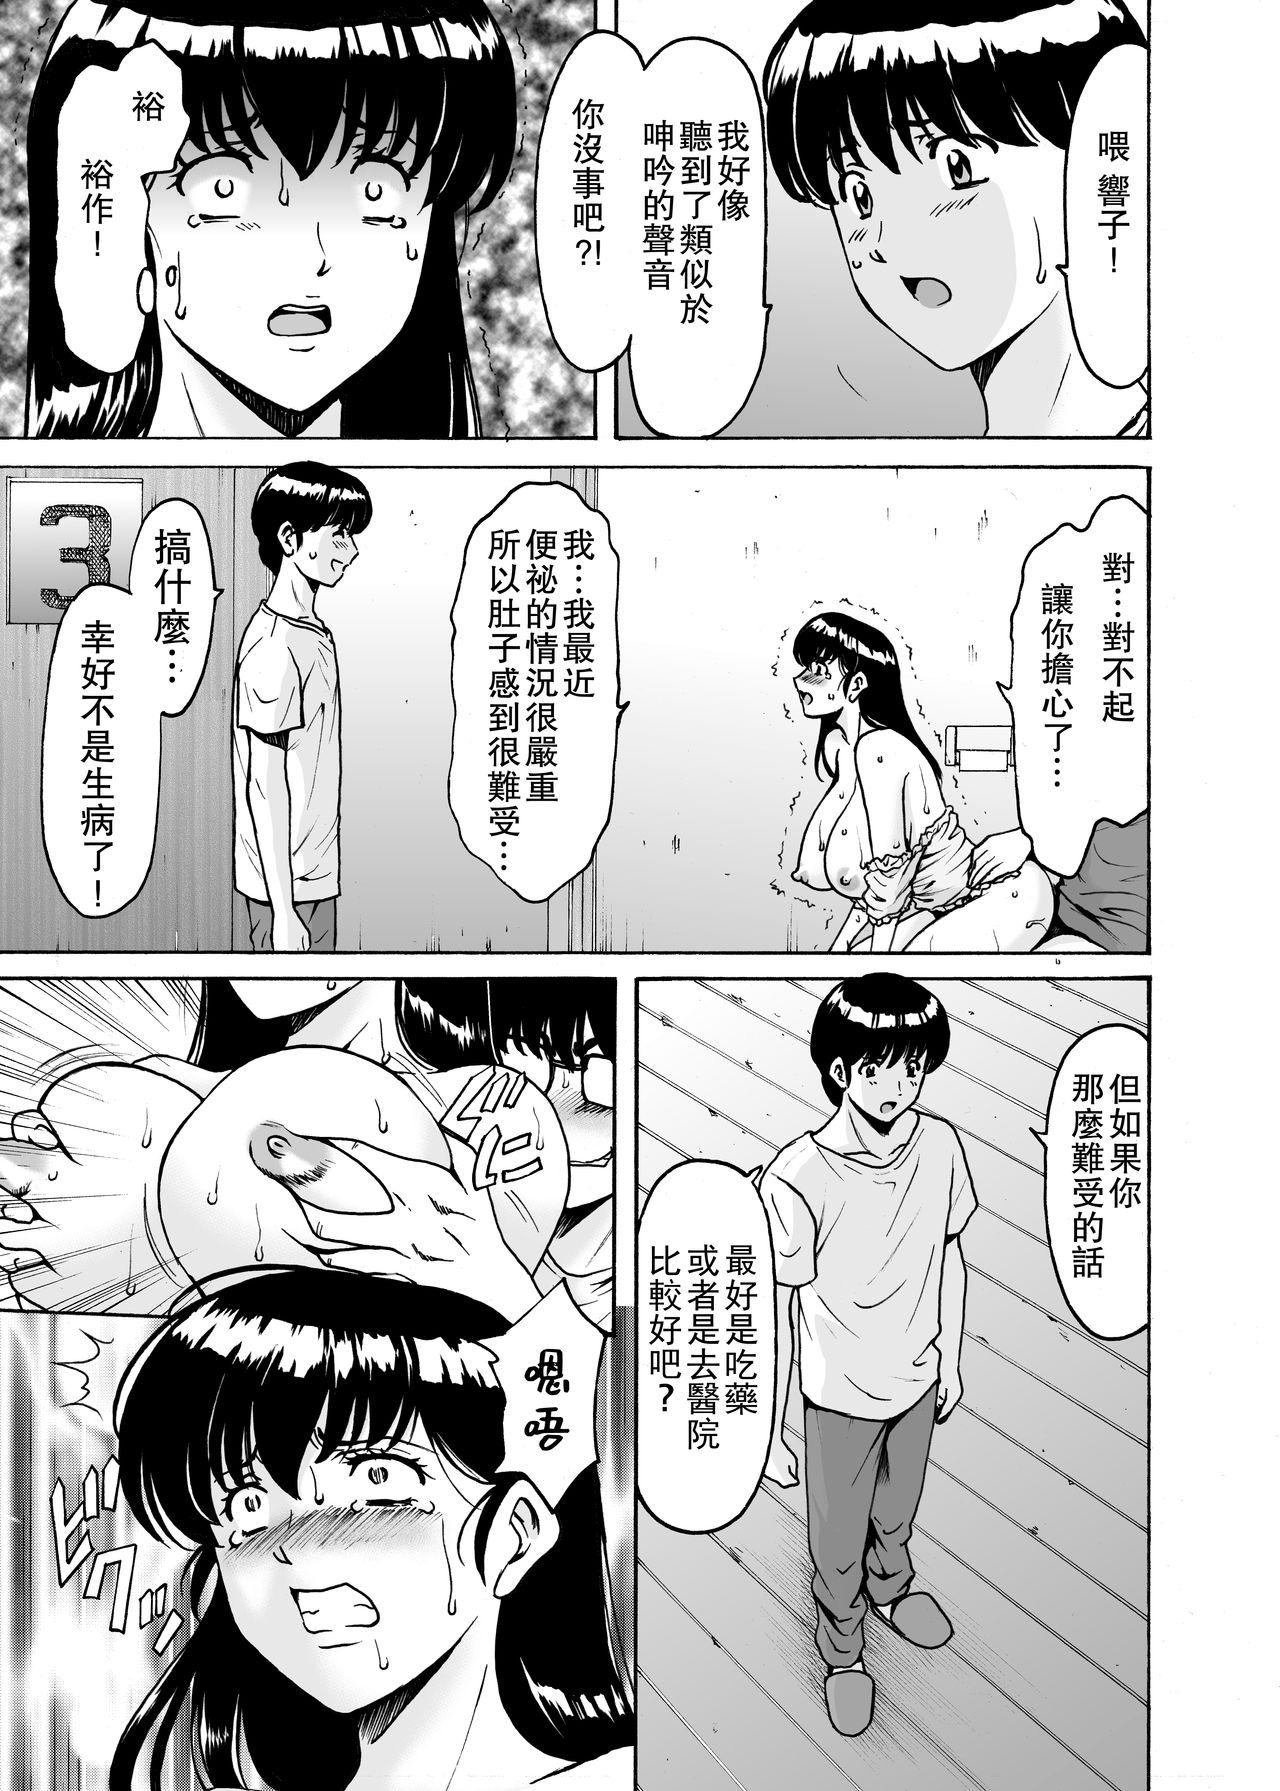 Footfetish Hitozuma Kanrinin Kyouko 8 Juujun Hen 3 - Maison ikkoku Gay Massage - Page 5